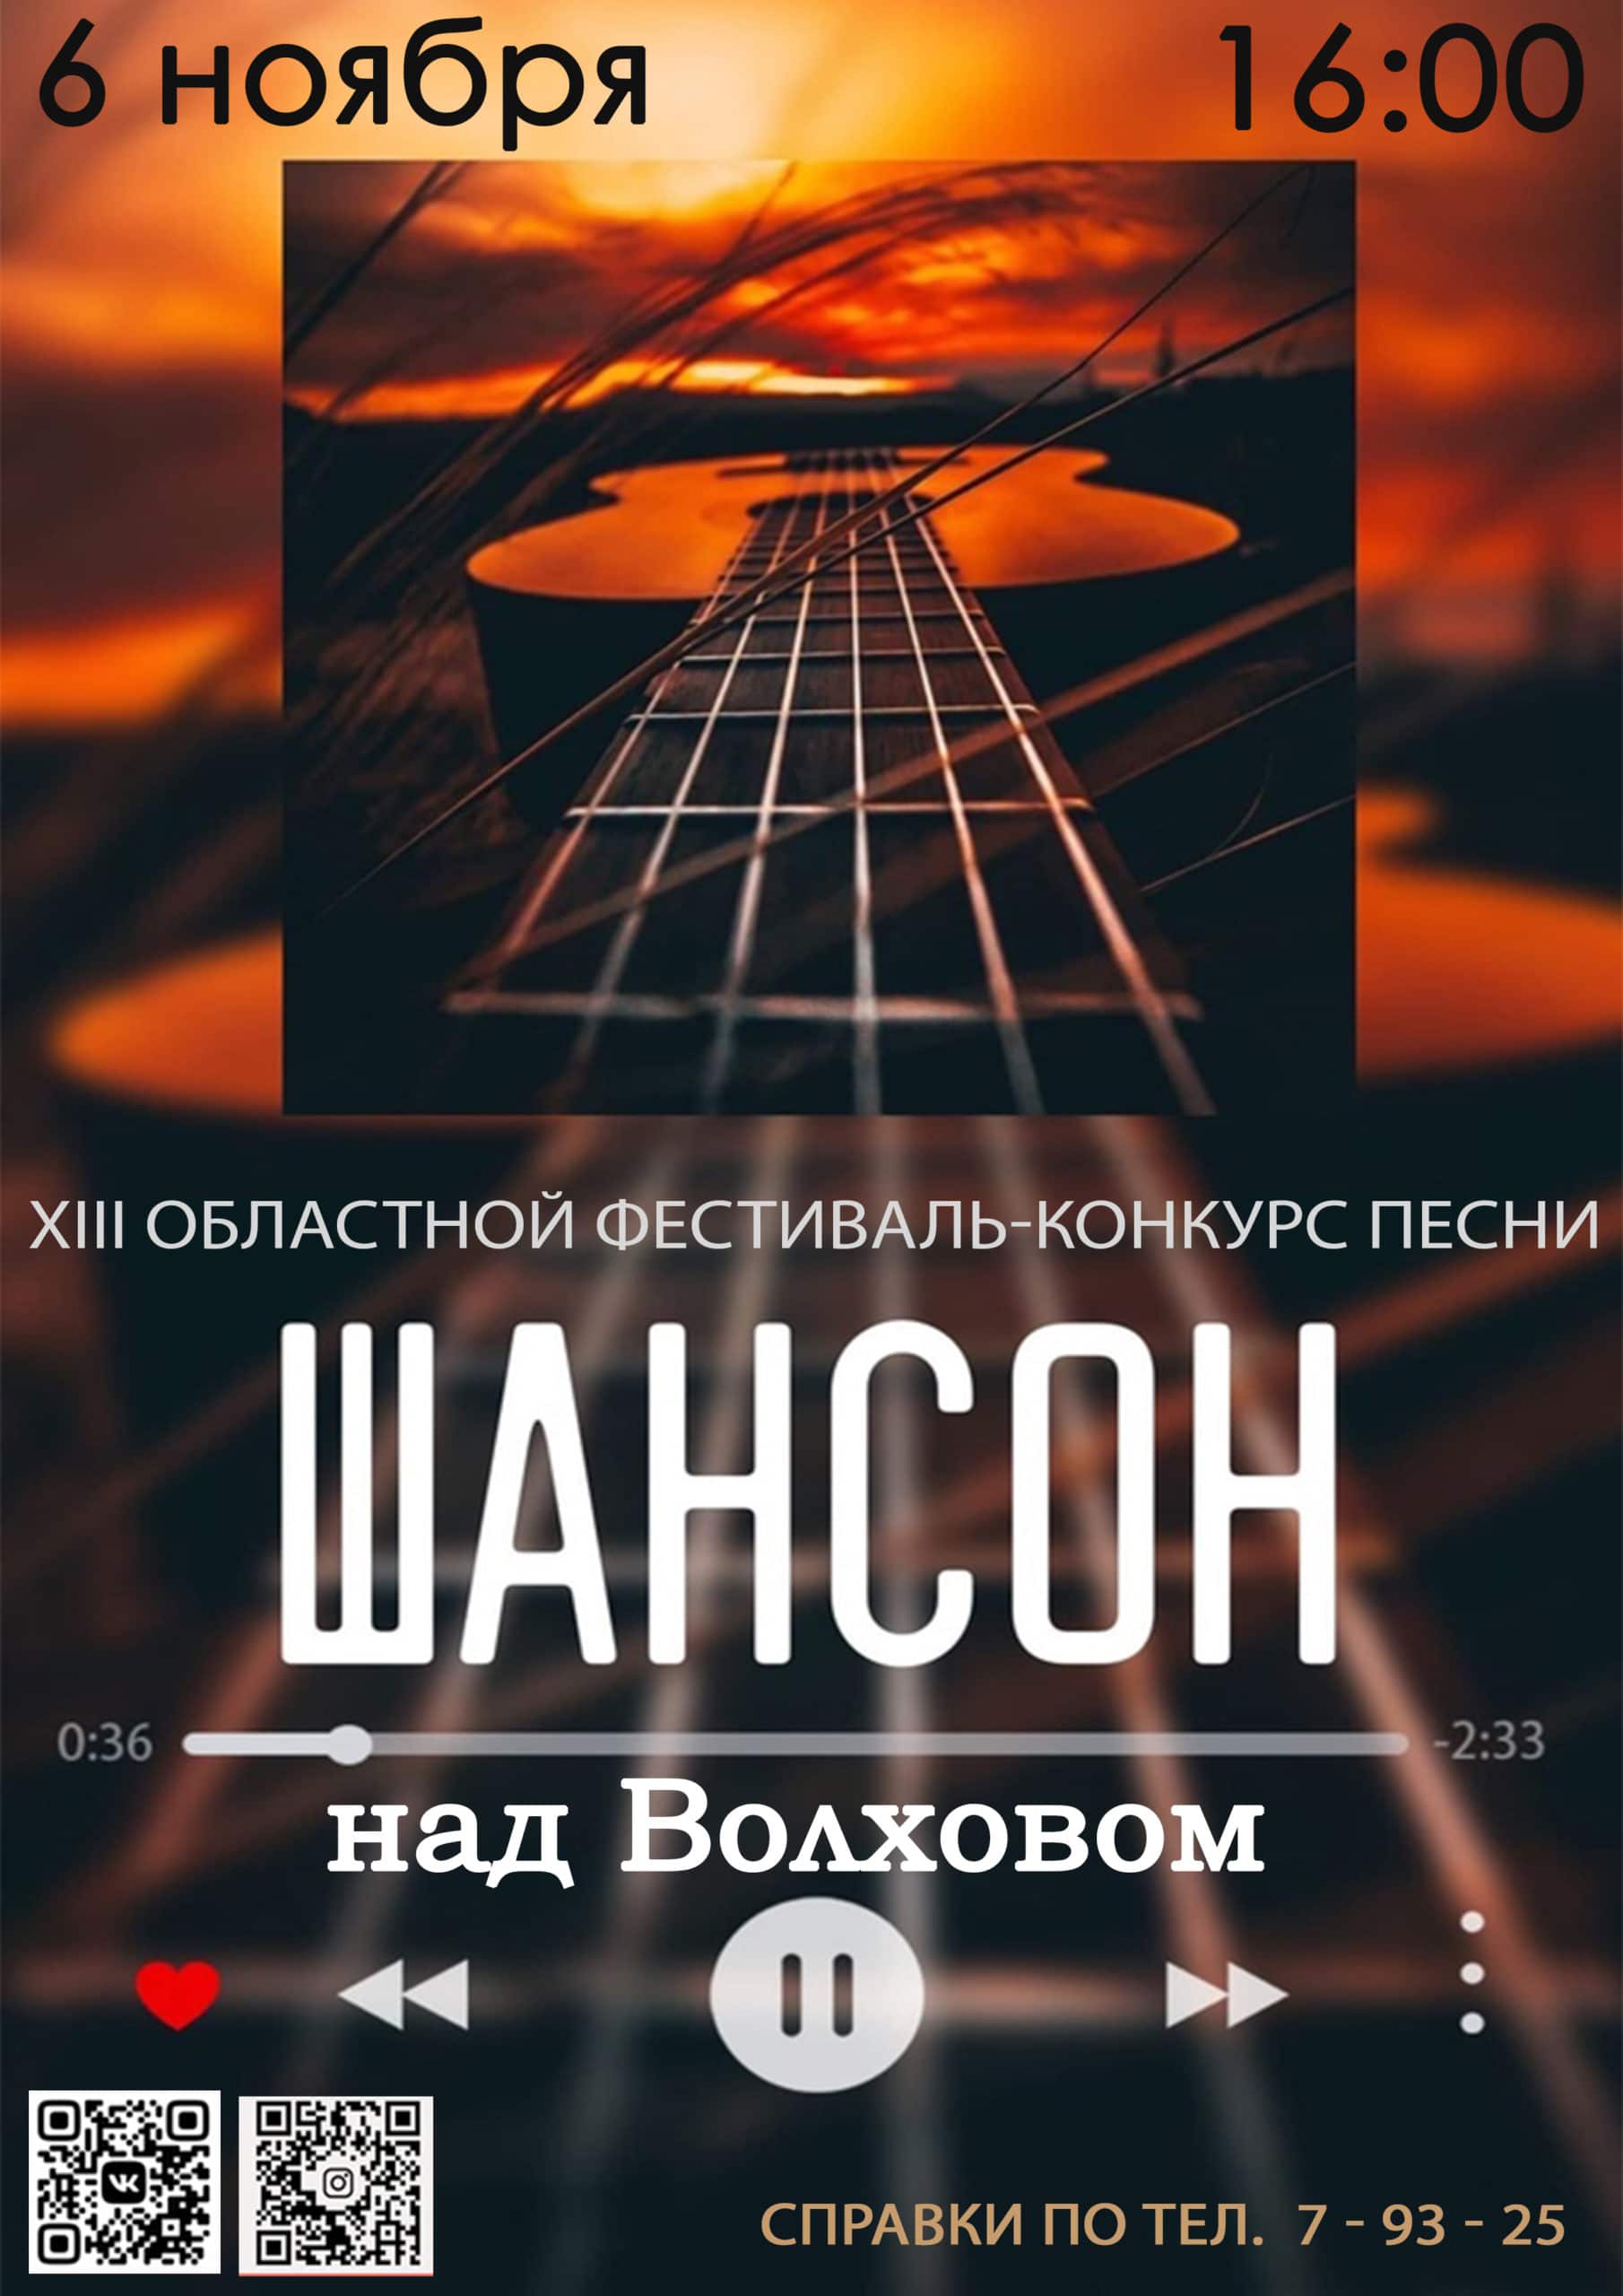 XII областной фестиваль конкурс песни "ШАНСОН НАД ВОЛХОВОМ"